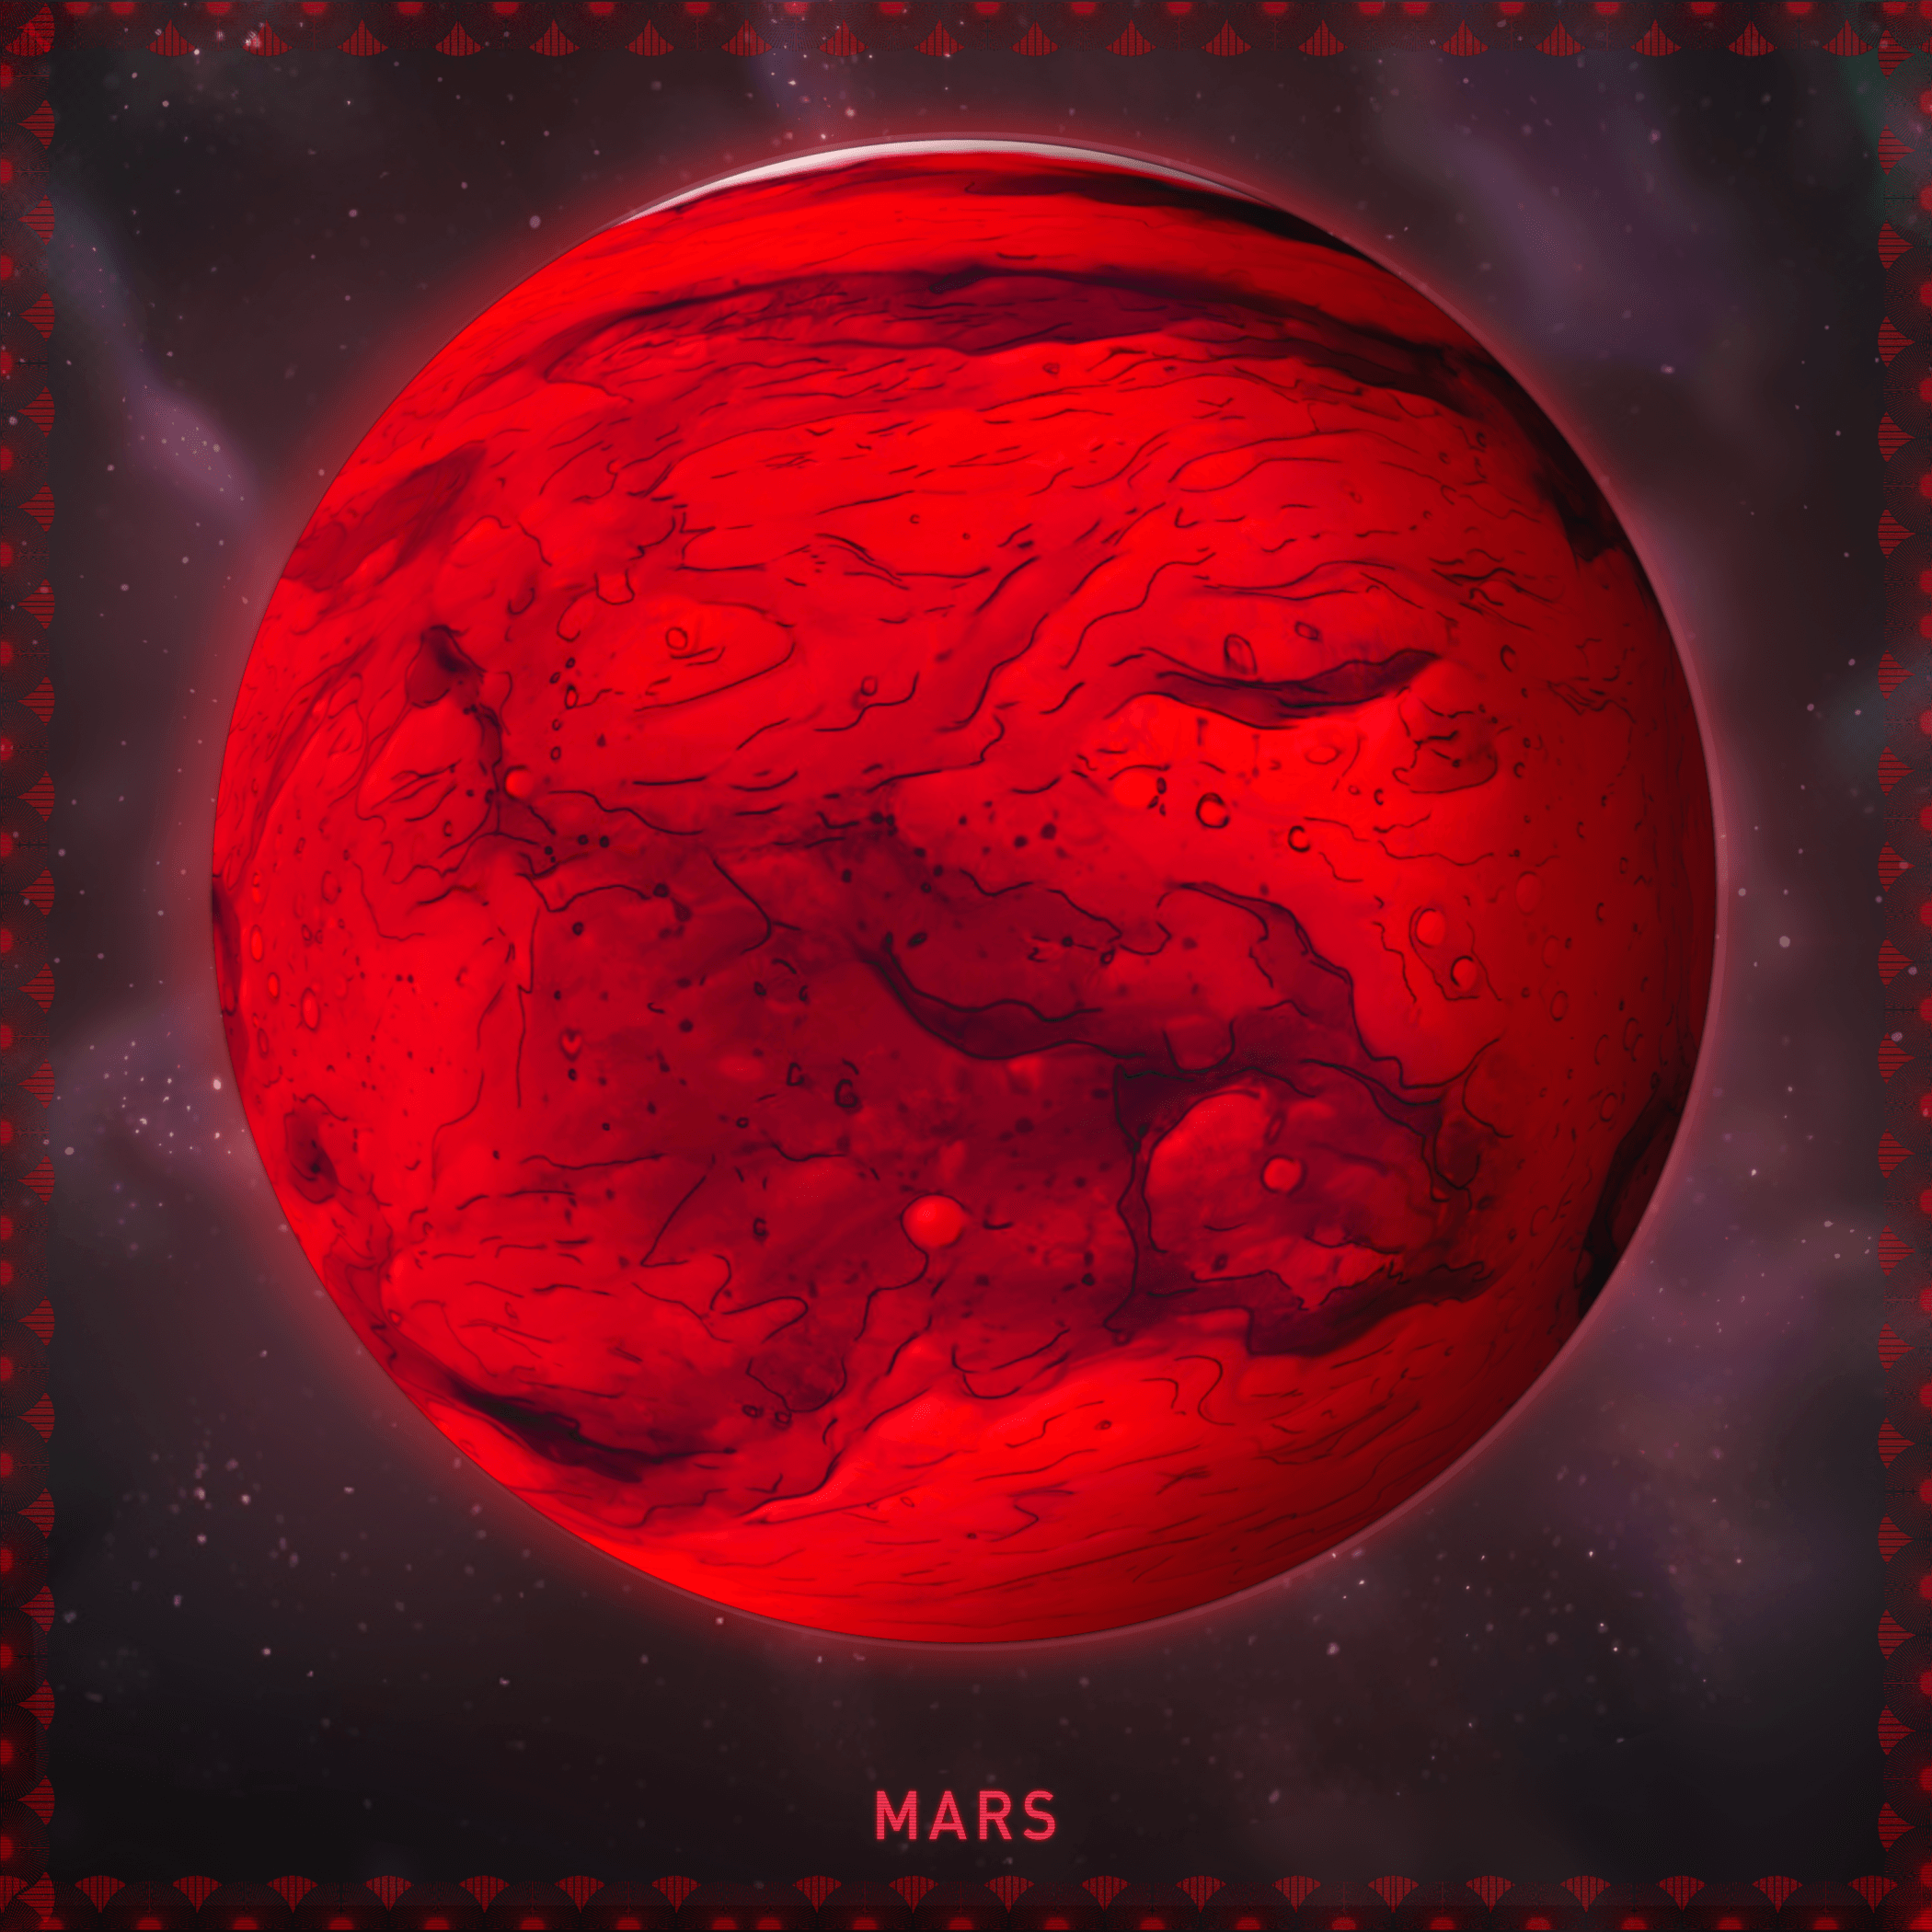 05 Mars